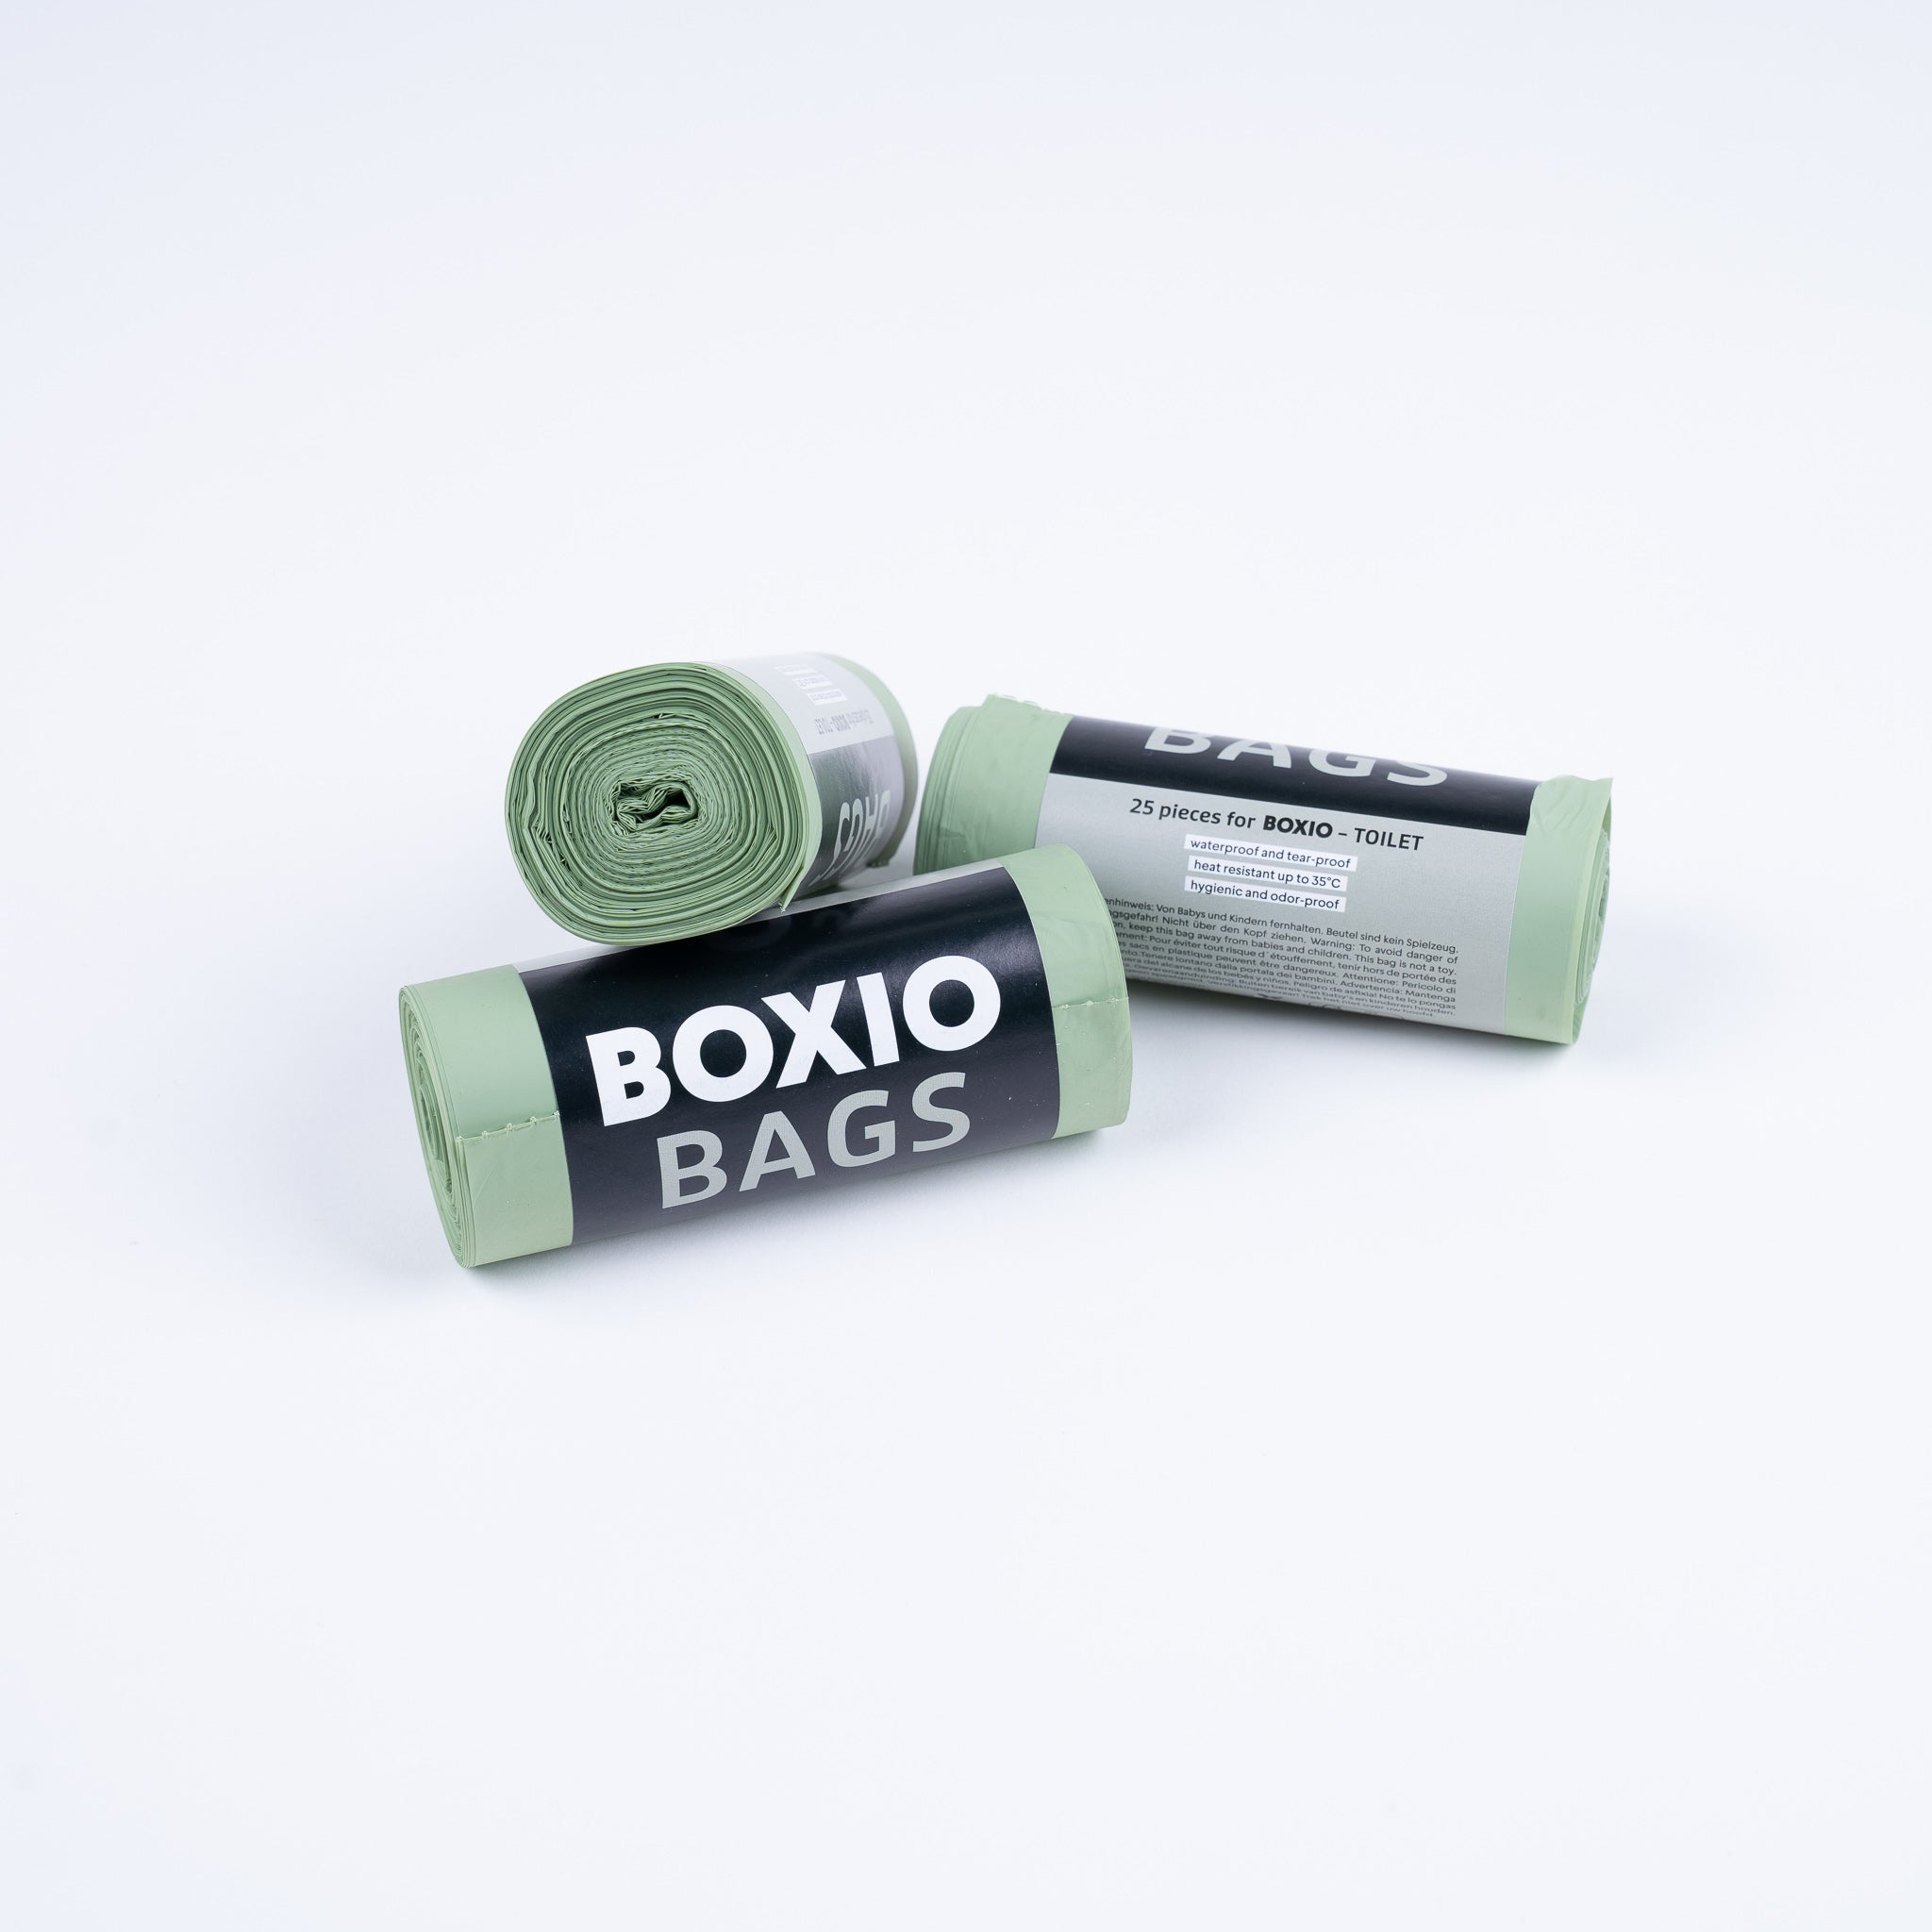 BOXIO - SANITARNY: Kompletny zestaw z toaletą z odprowadzaniem moczu, ruchomą umywalką i akcesoriami.